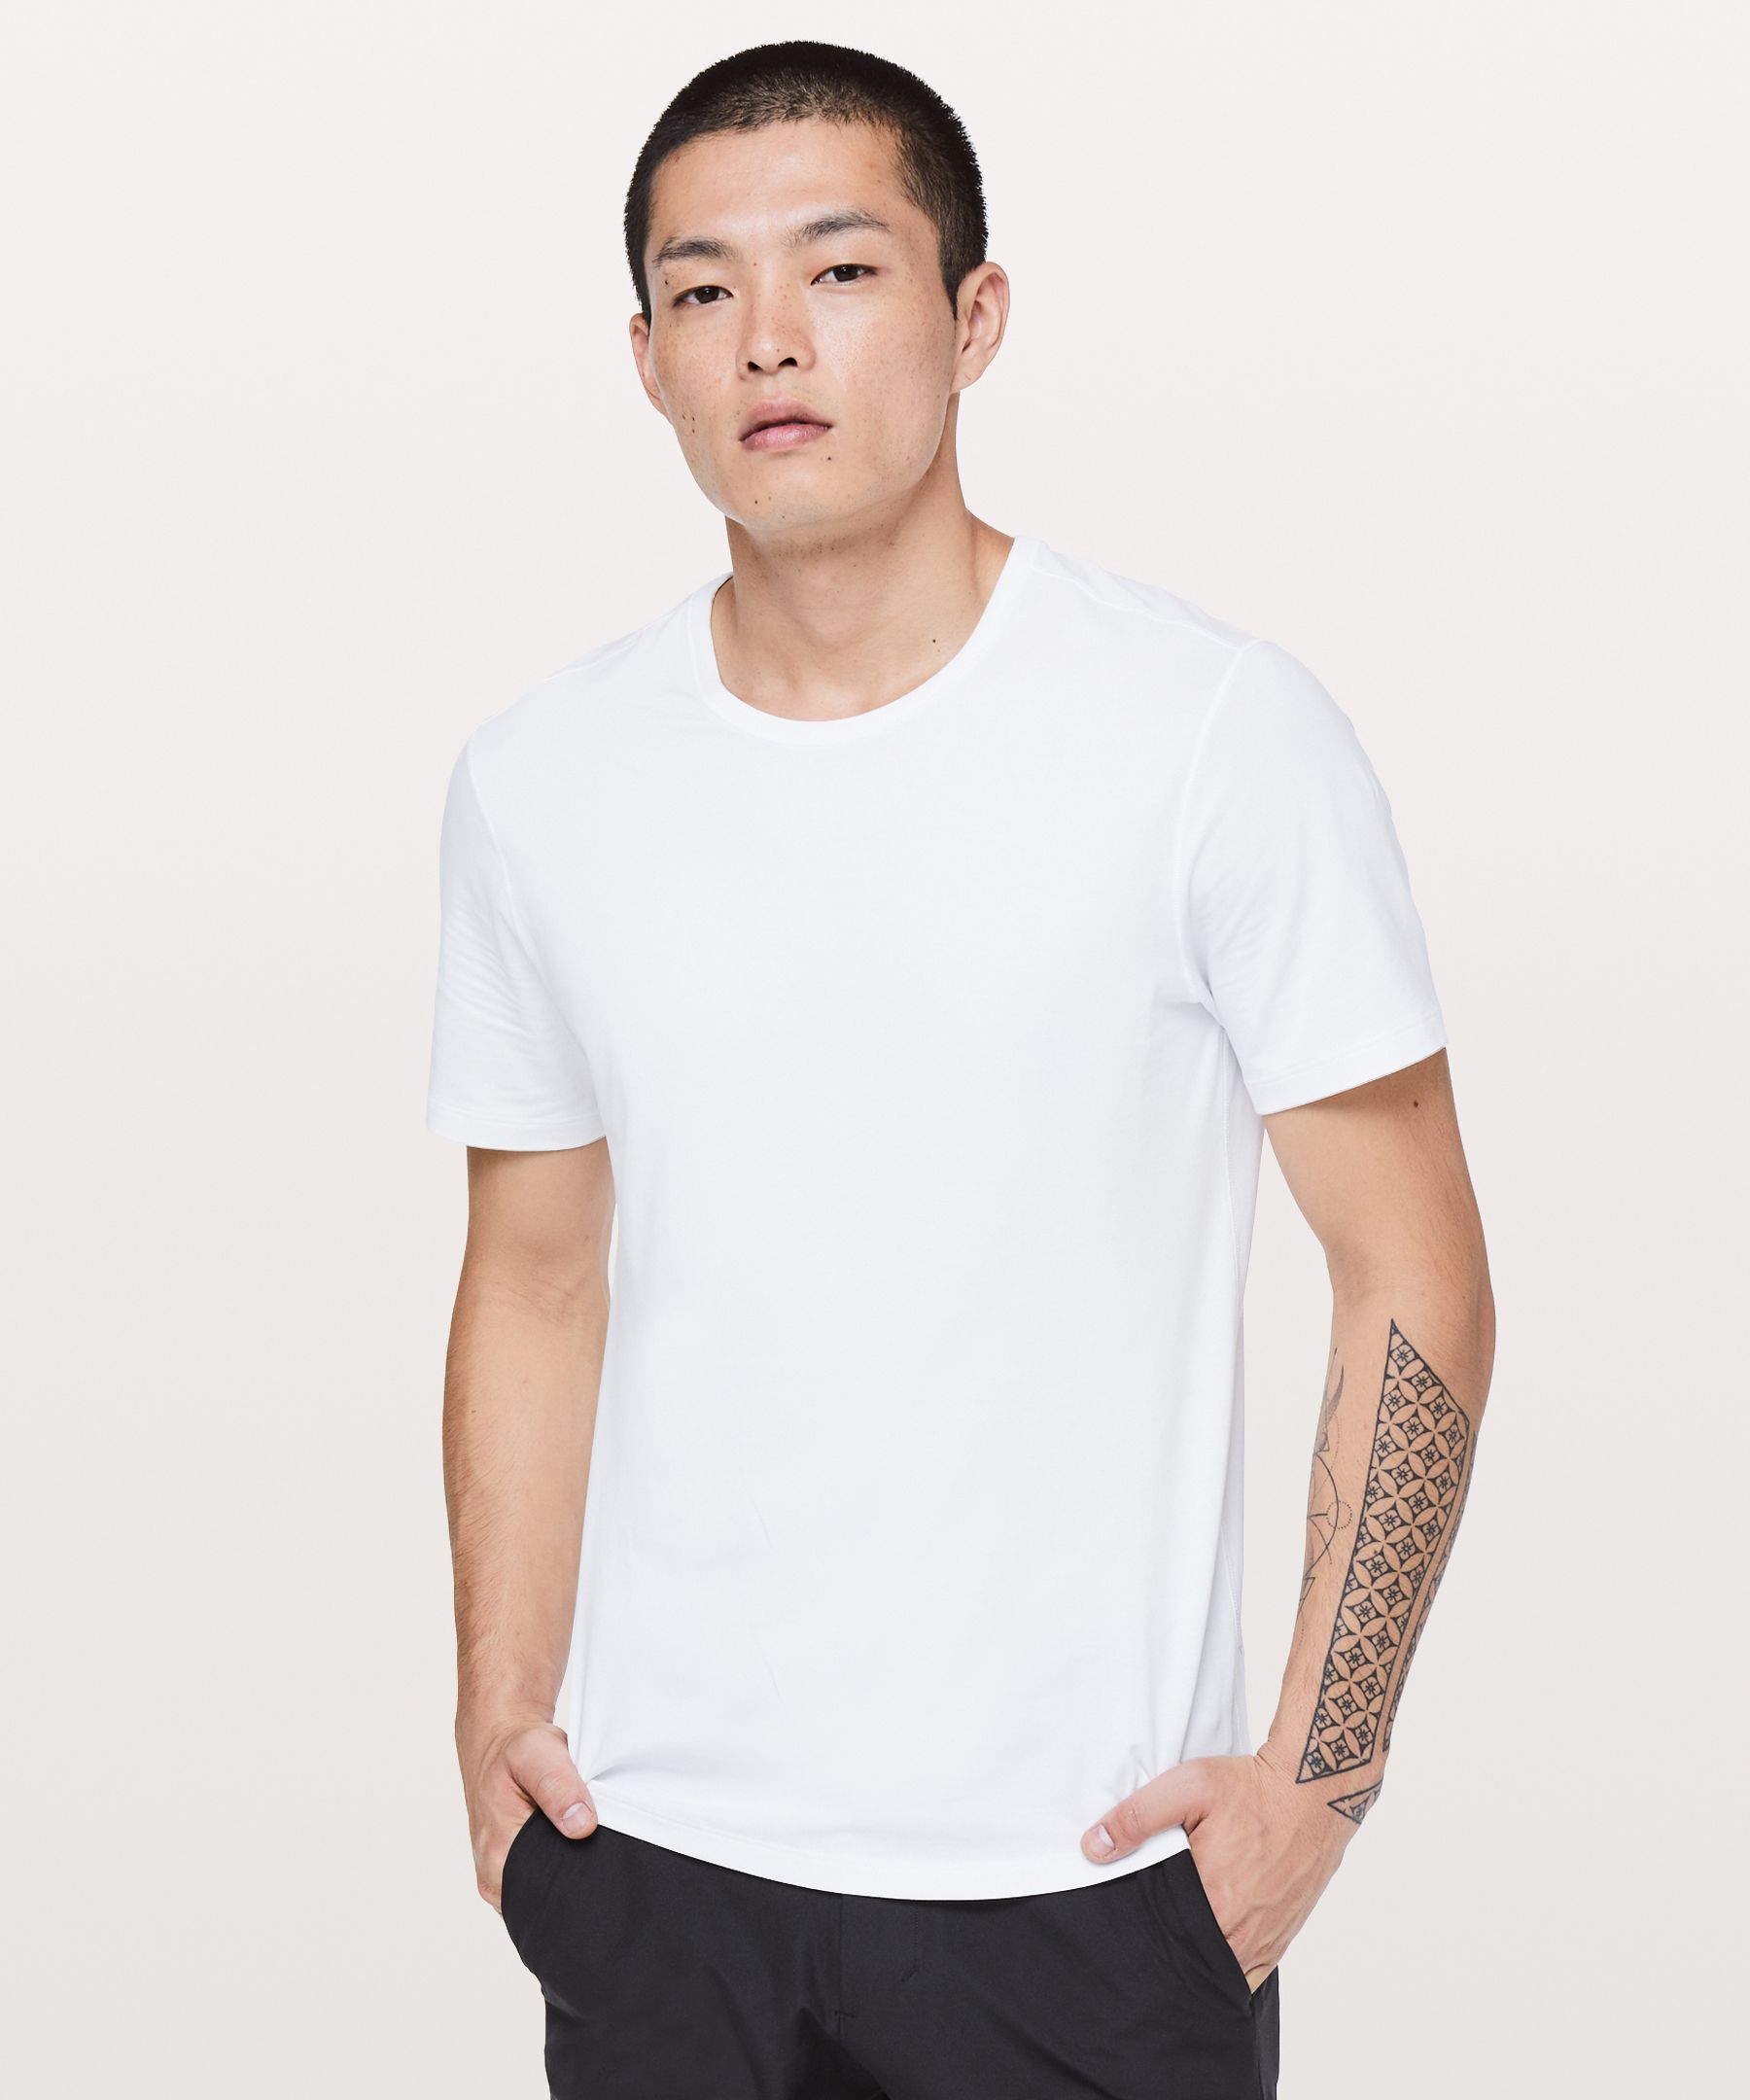 5 Year Basic T-Shirt, Men's Short Sleeve Shirts & Tee's